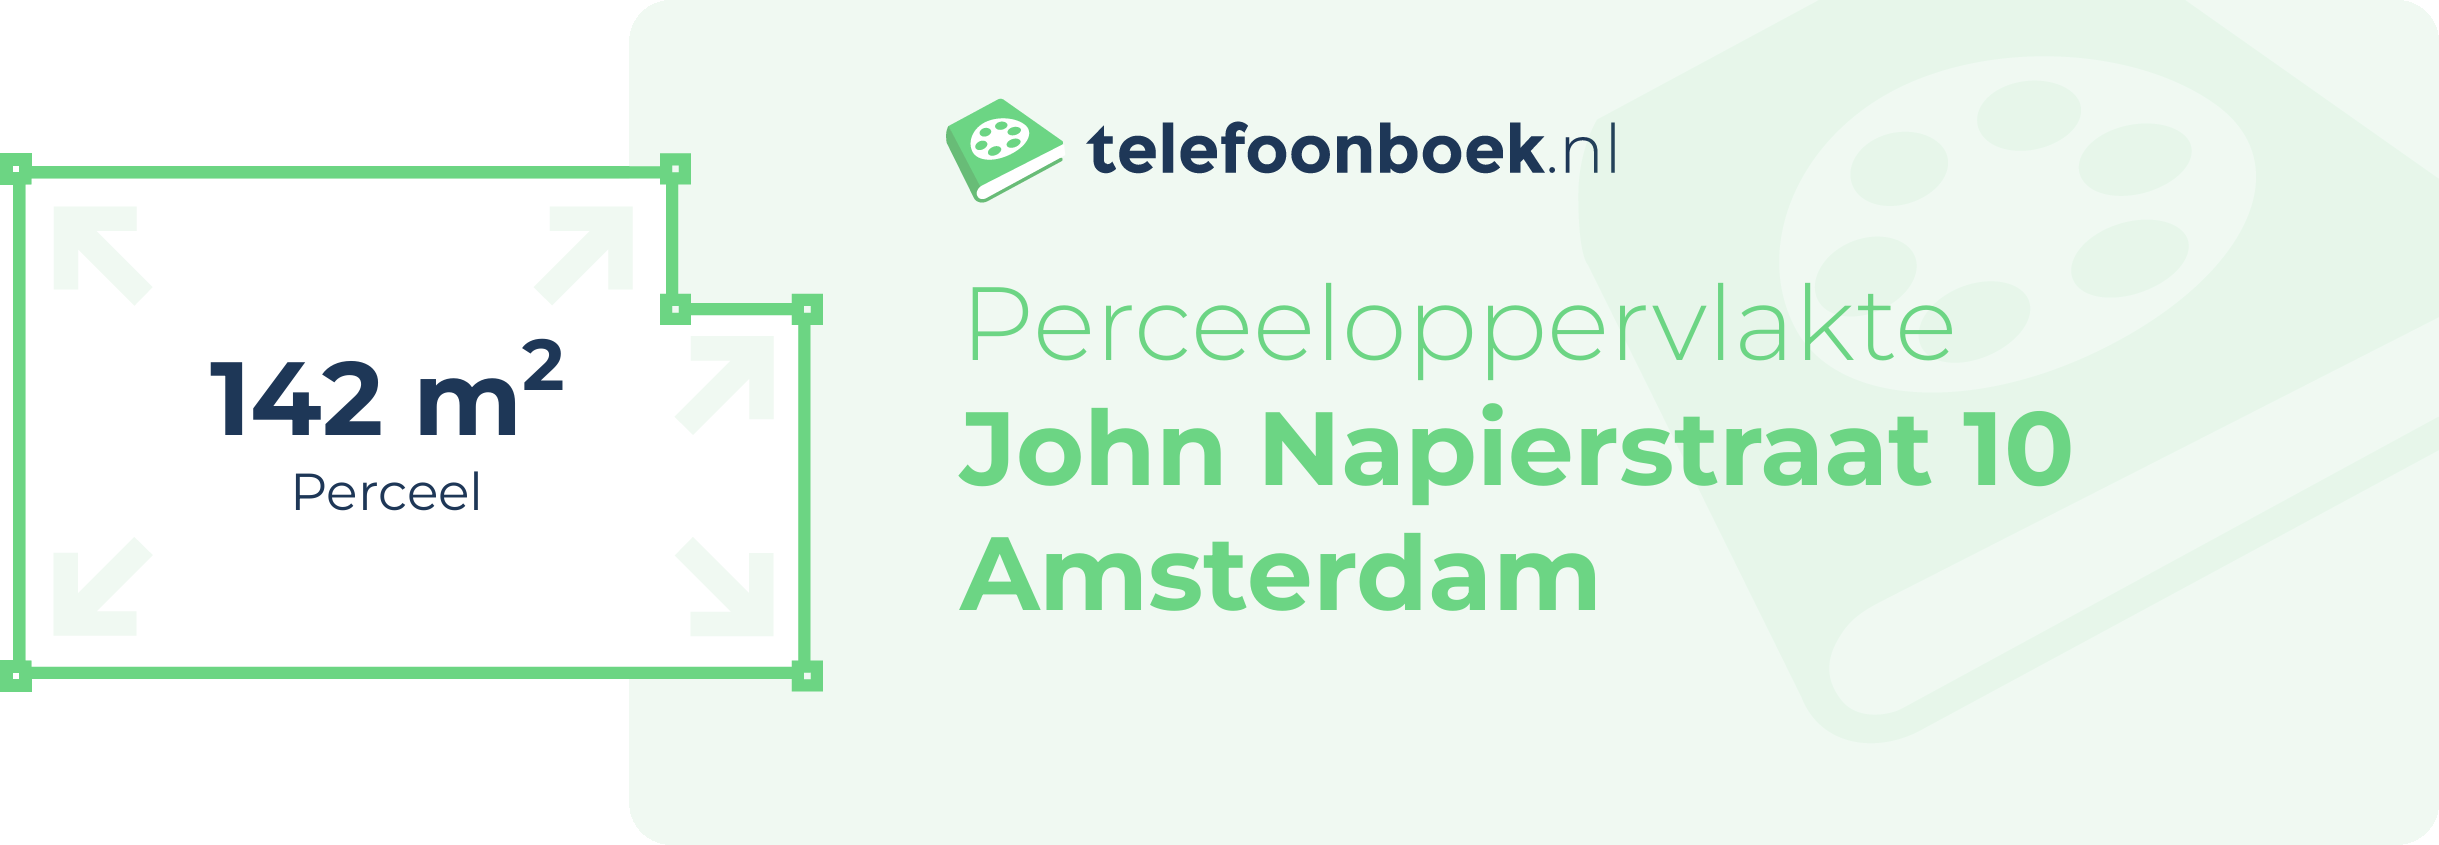 Perceeloppervlakte John Napierstraat 10 Amsterdam